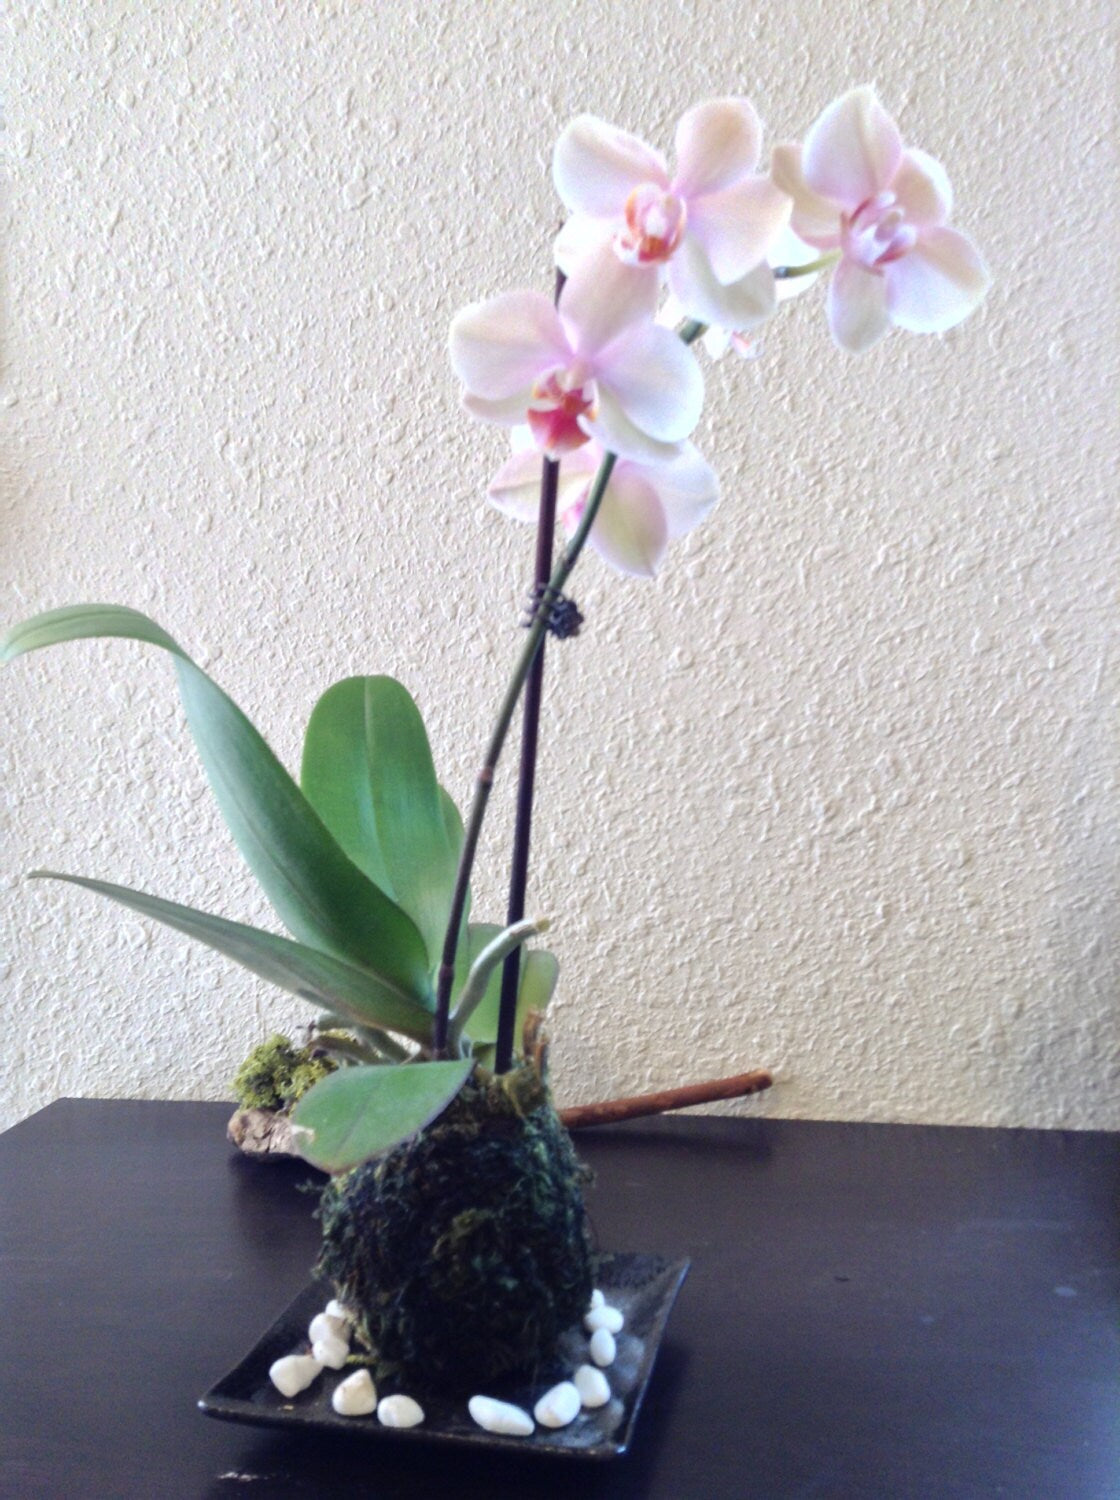 Kokedama - Moss ball with beautiful white-pink orchid